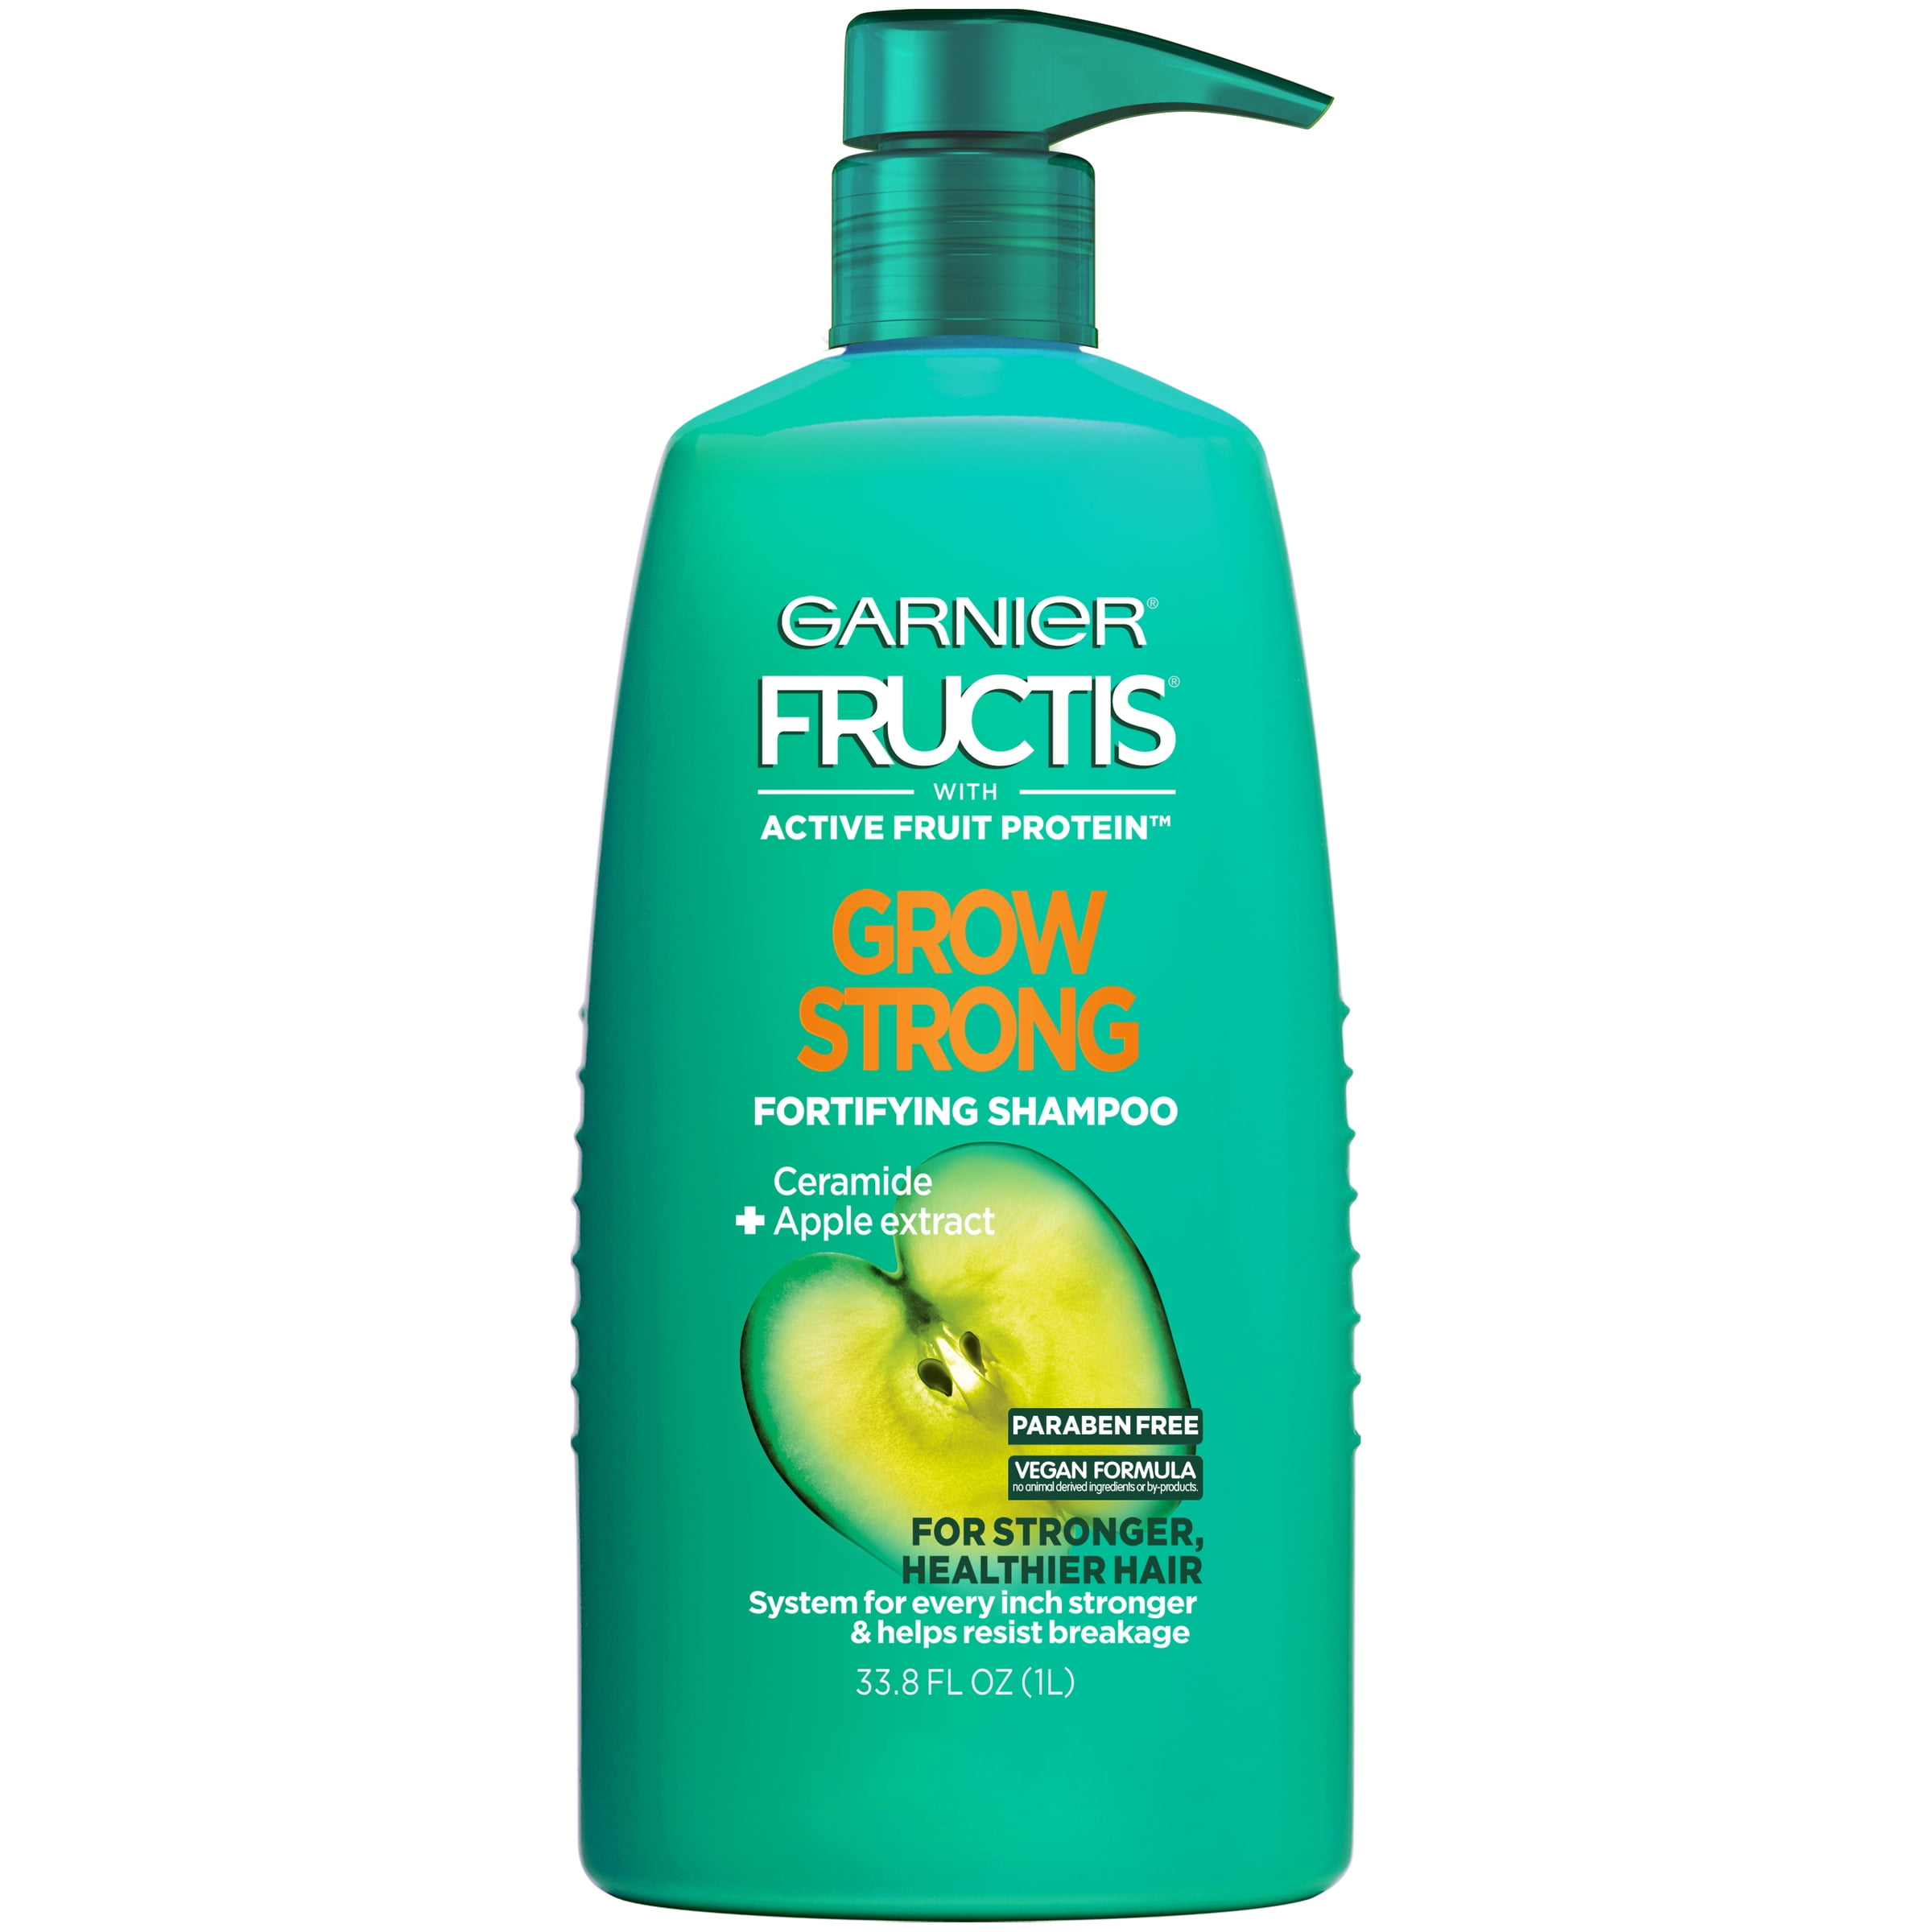 Garnier Fructis Grow Strong Shampoo, For Stronger, Healthier, Shinier Hair, 33.8 fl oz